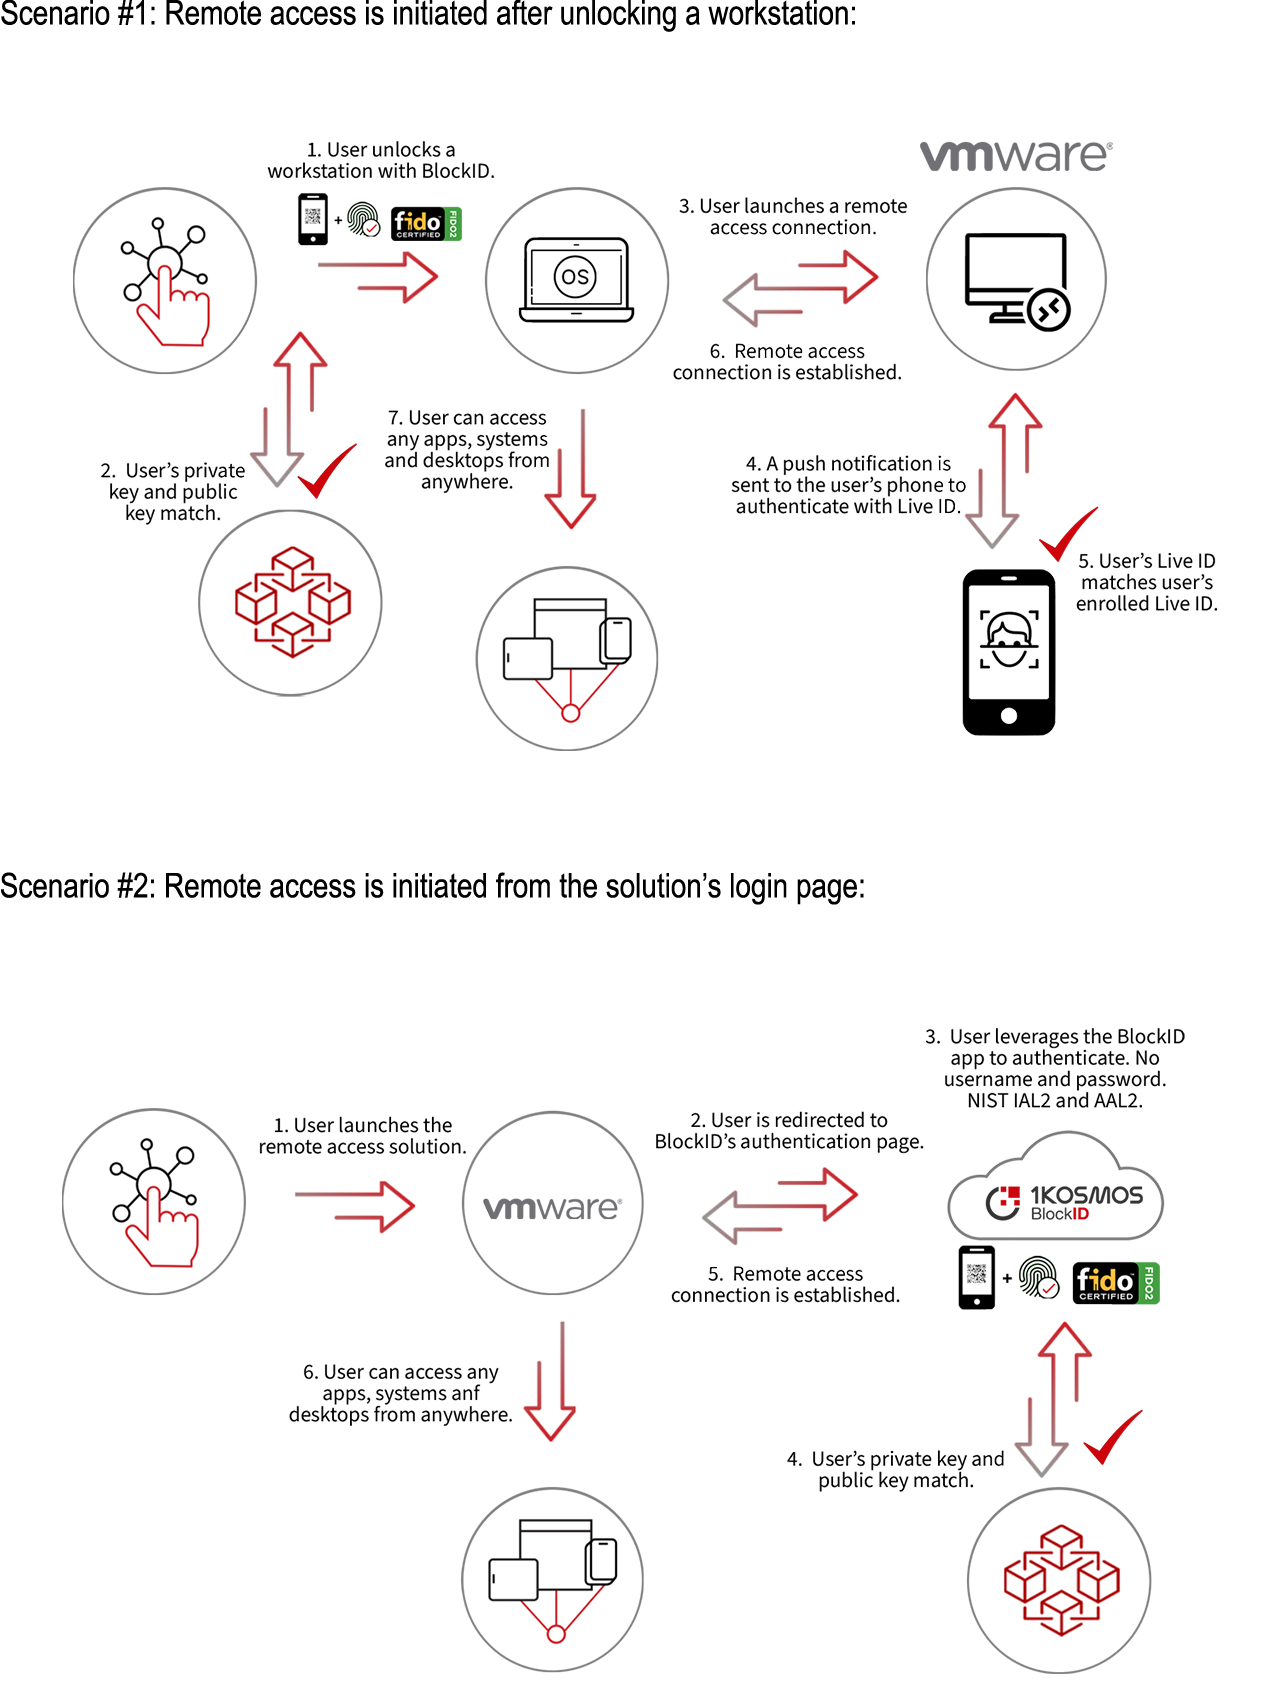 vmware diagram scenario 1 and 2